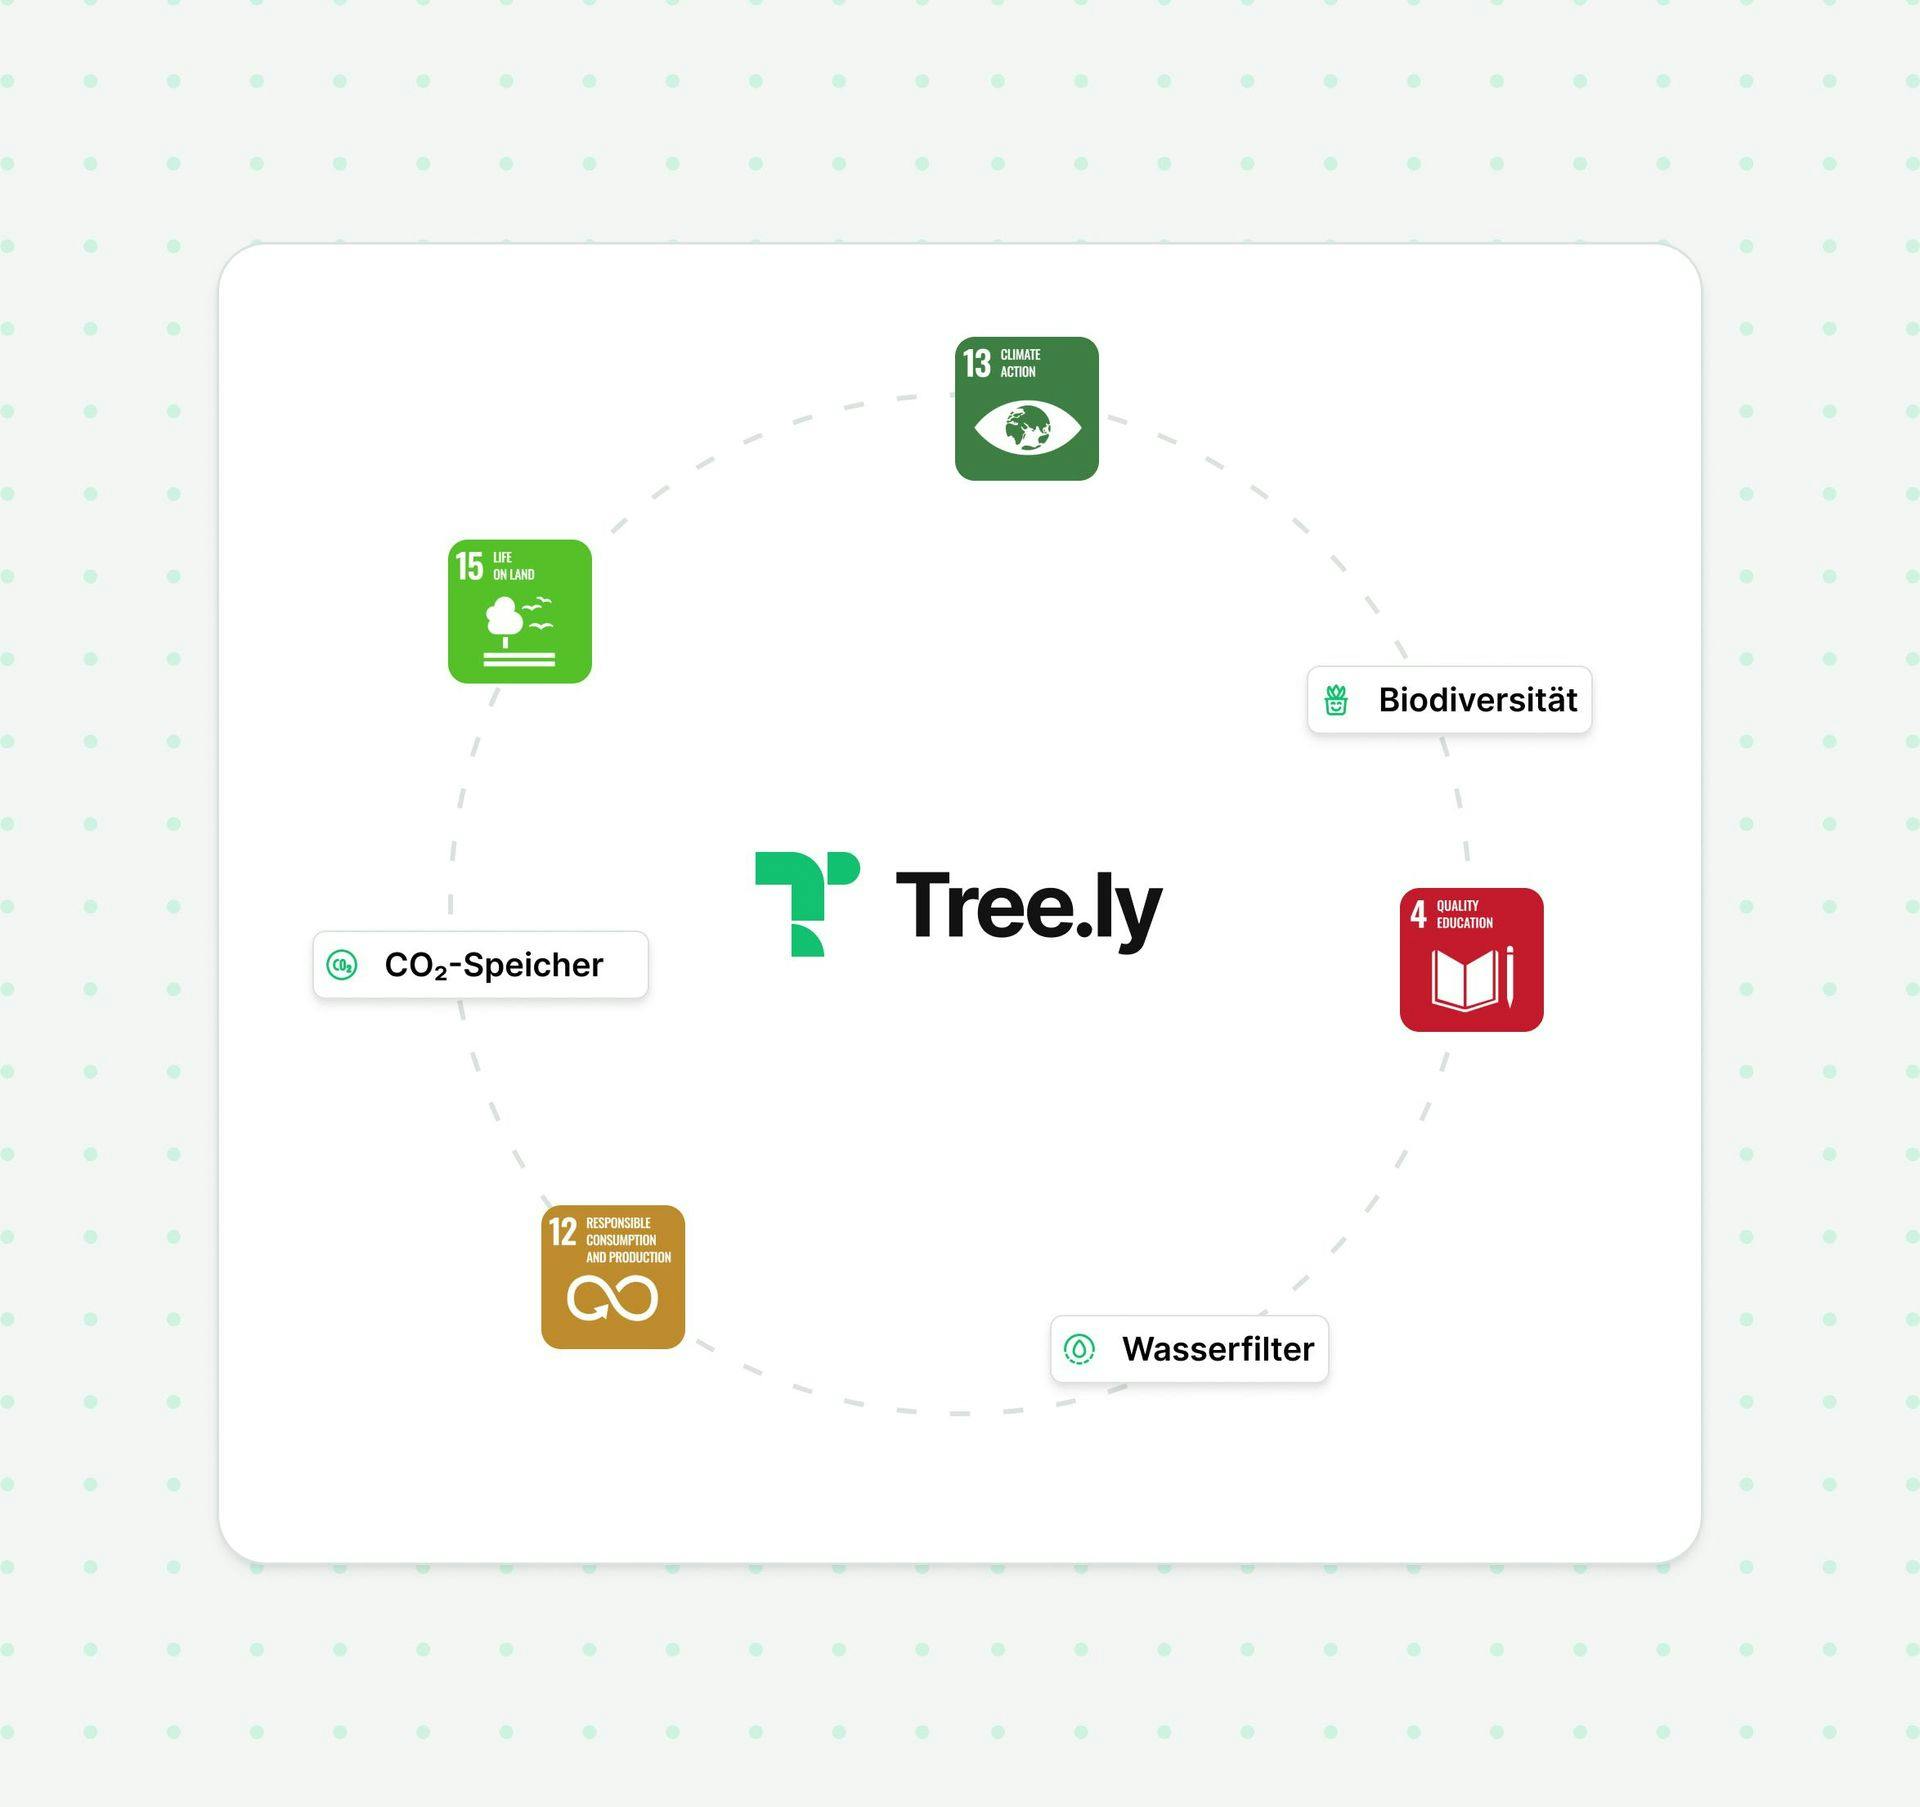 Bild mit SDG und Tree.ly logo